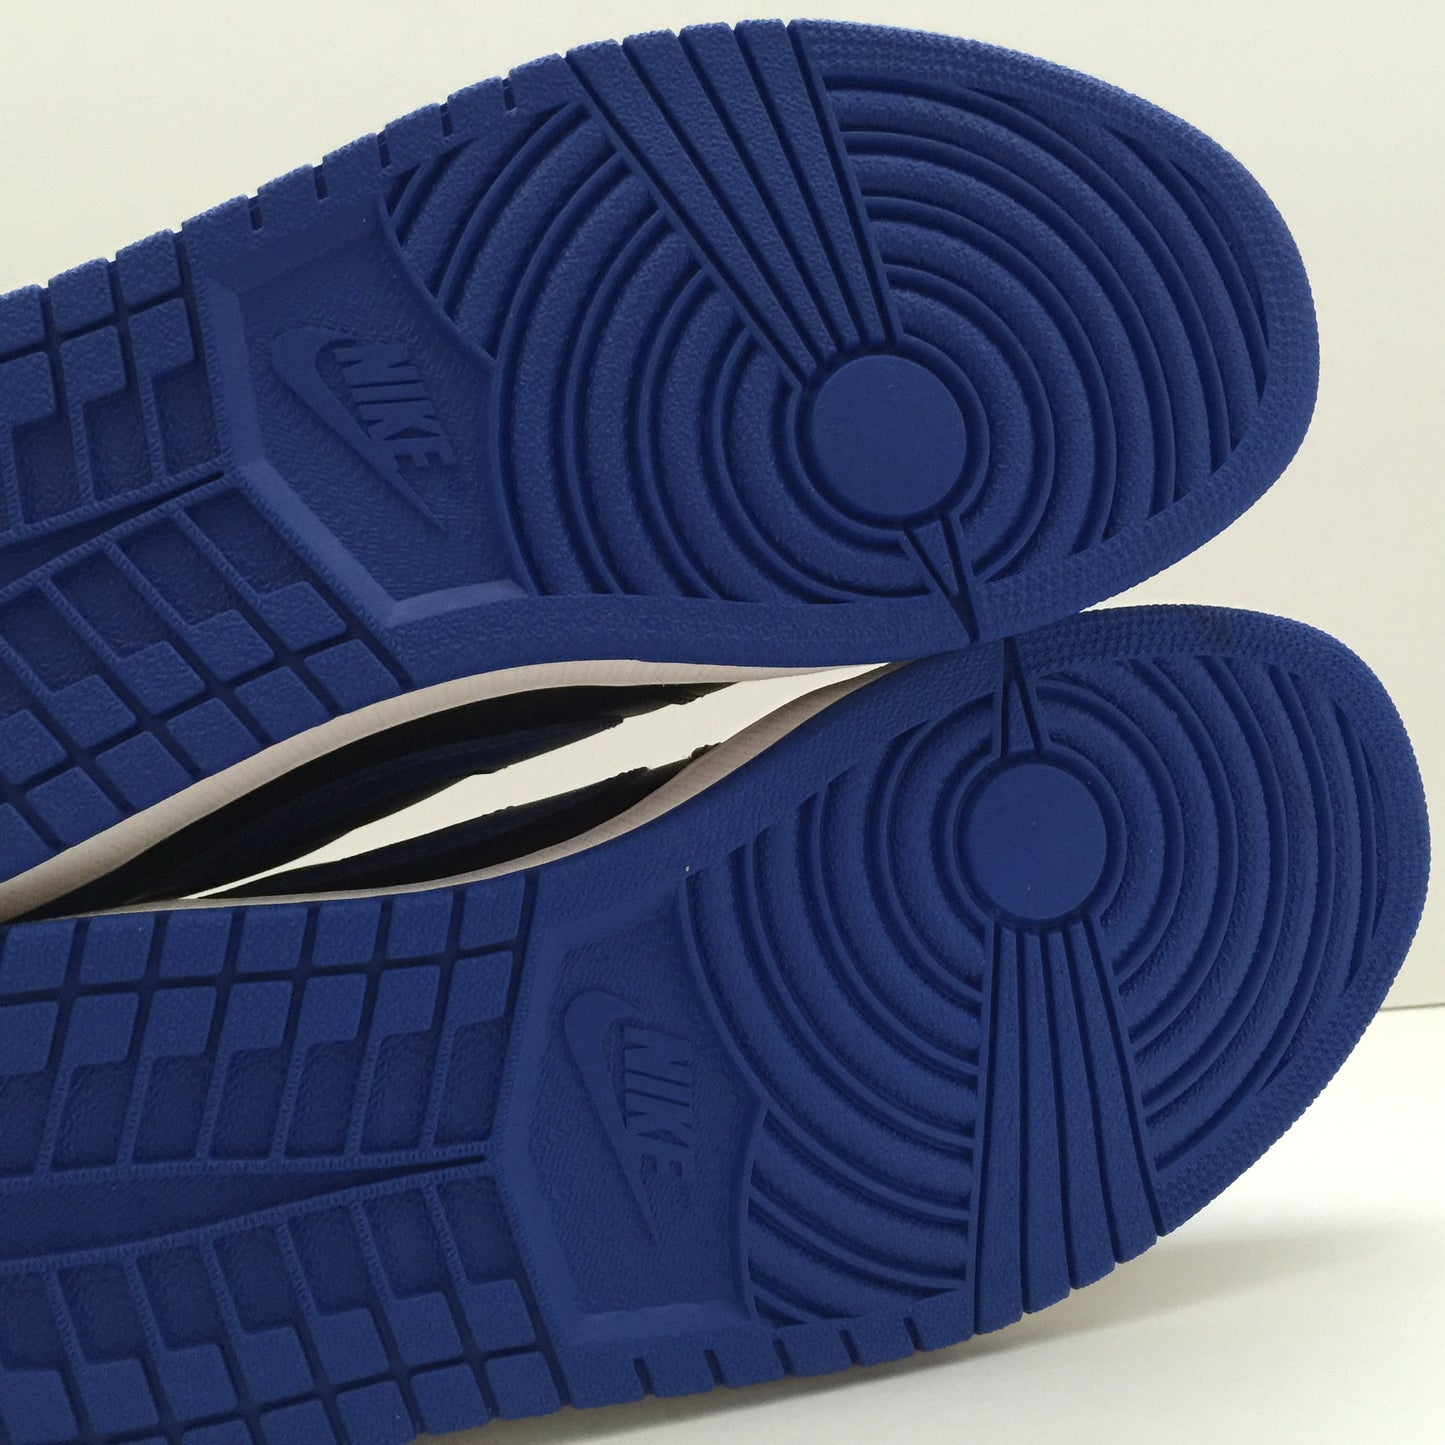 DS Nike Air Jordan 1 I Low OG "Royal" Size 10.5/Size 12 - DOPEFOOT
 - 6